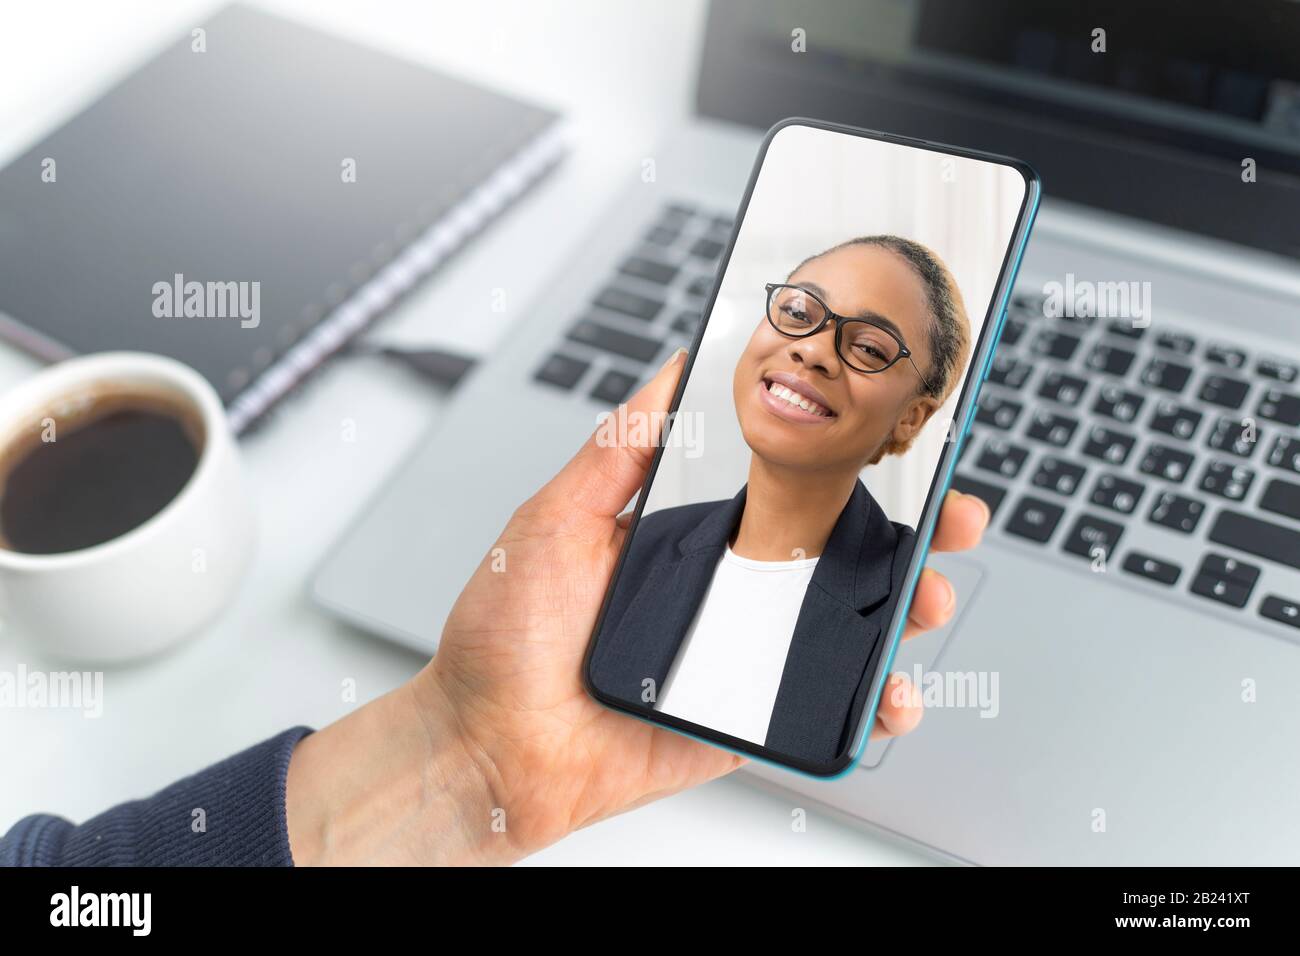 Videochiamata online tramite smartphone. Consulenza aziendale con donna africana che chattano sullo schermo del telefono cellulare. Foto Stock